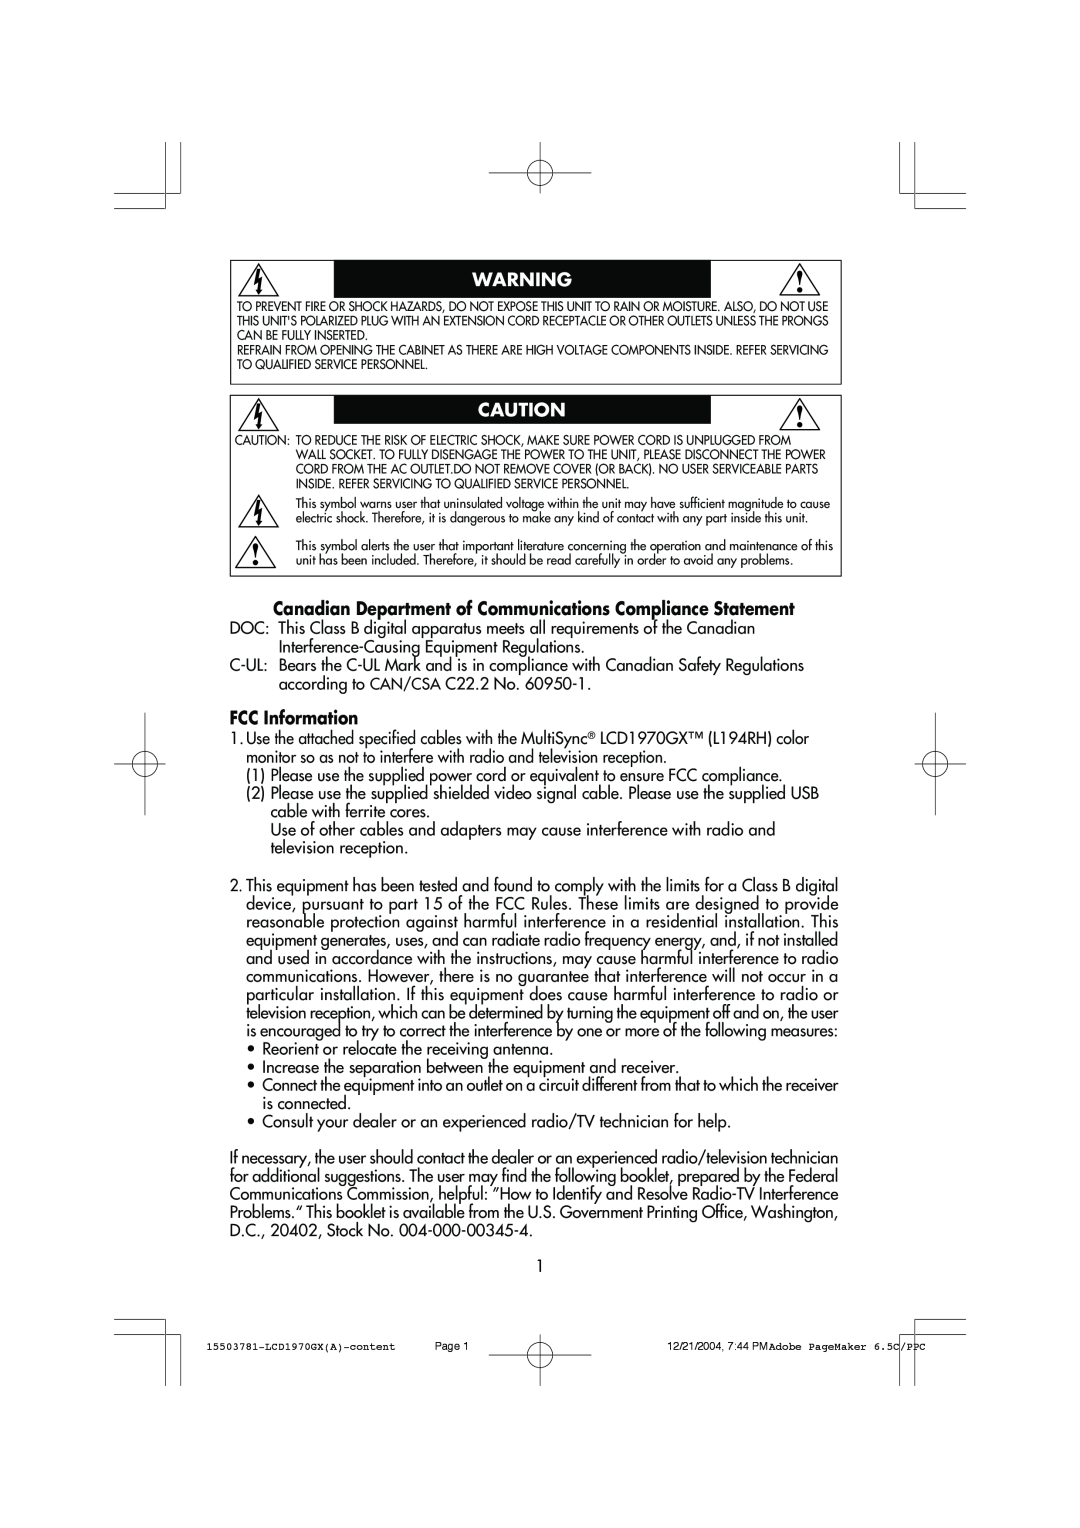 NEC LCD1970GX user manual FCC Information 